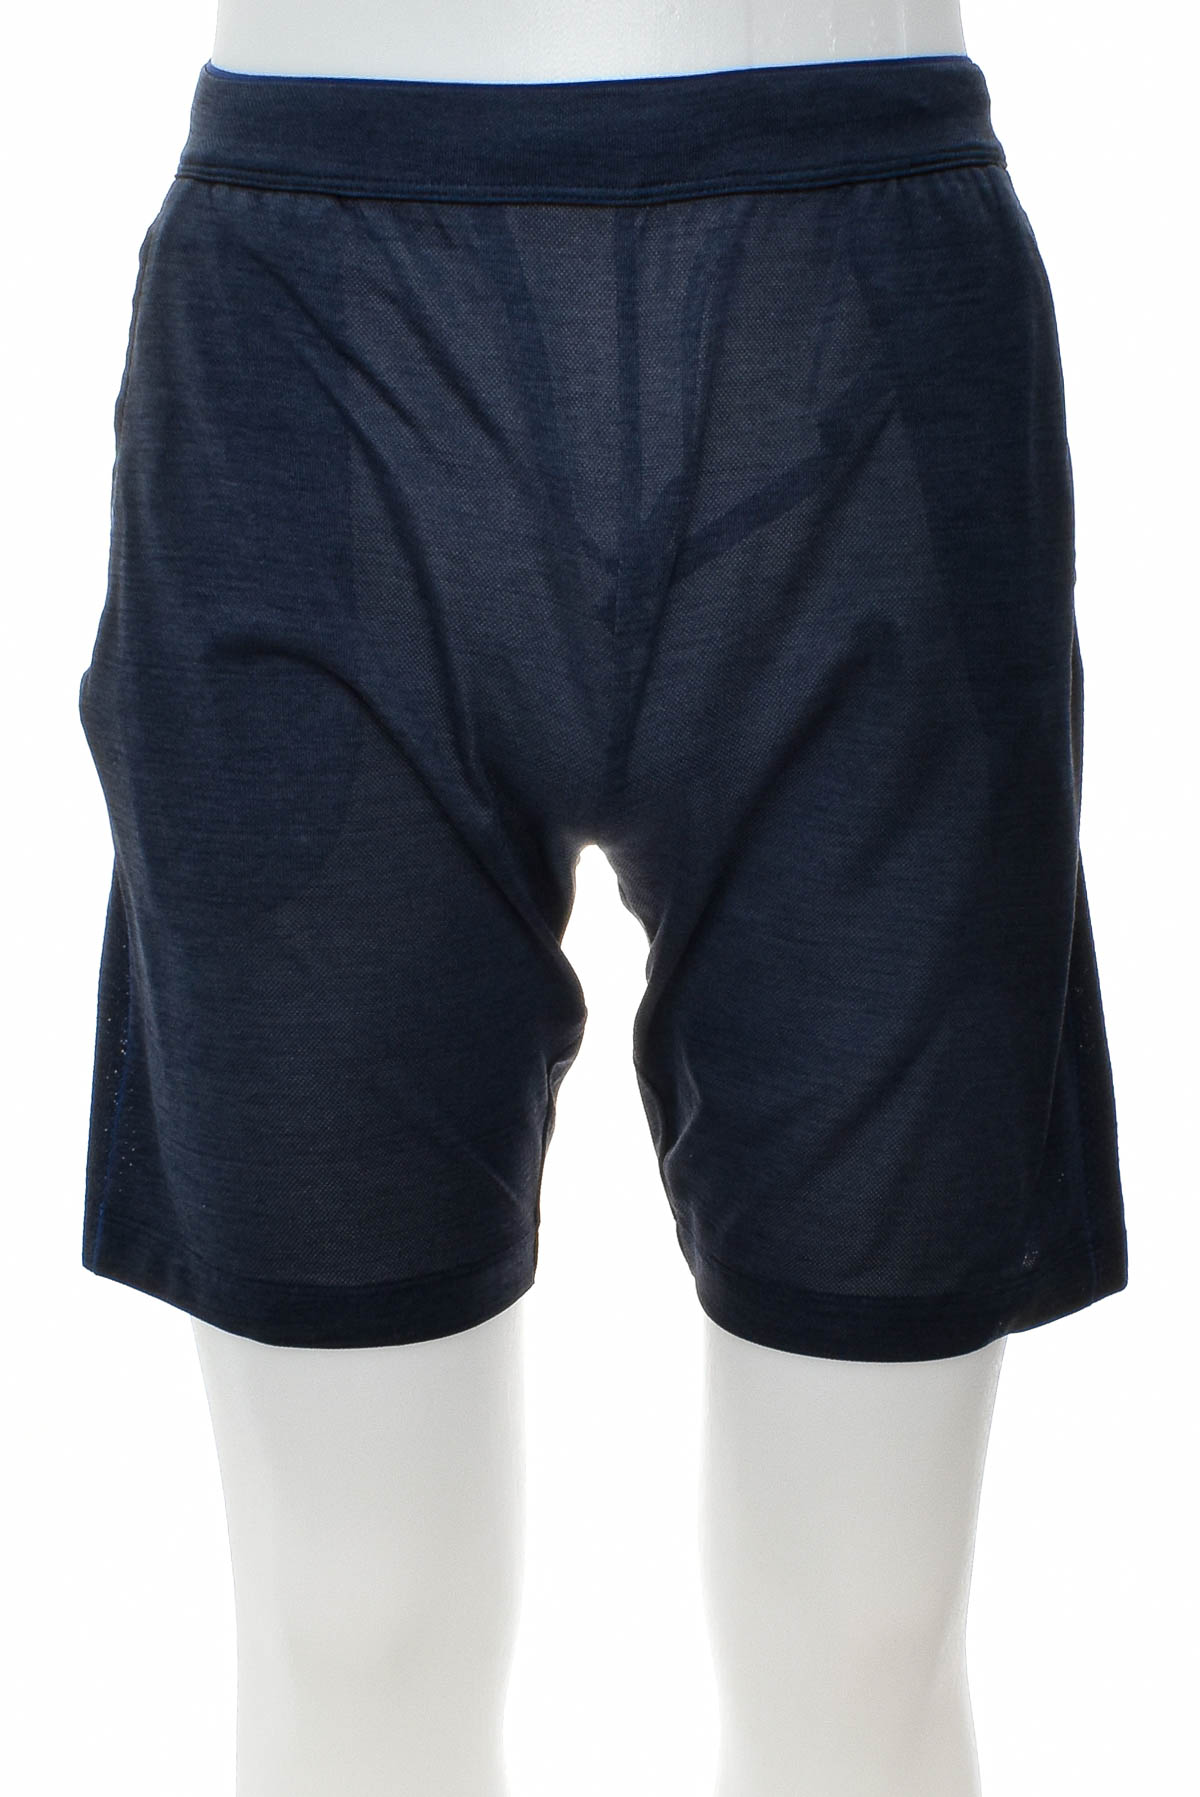 Men's shorts - UNIQLO - 0